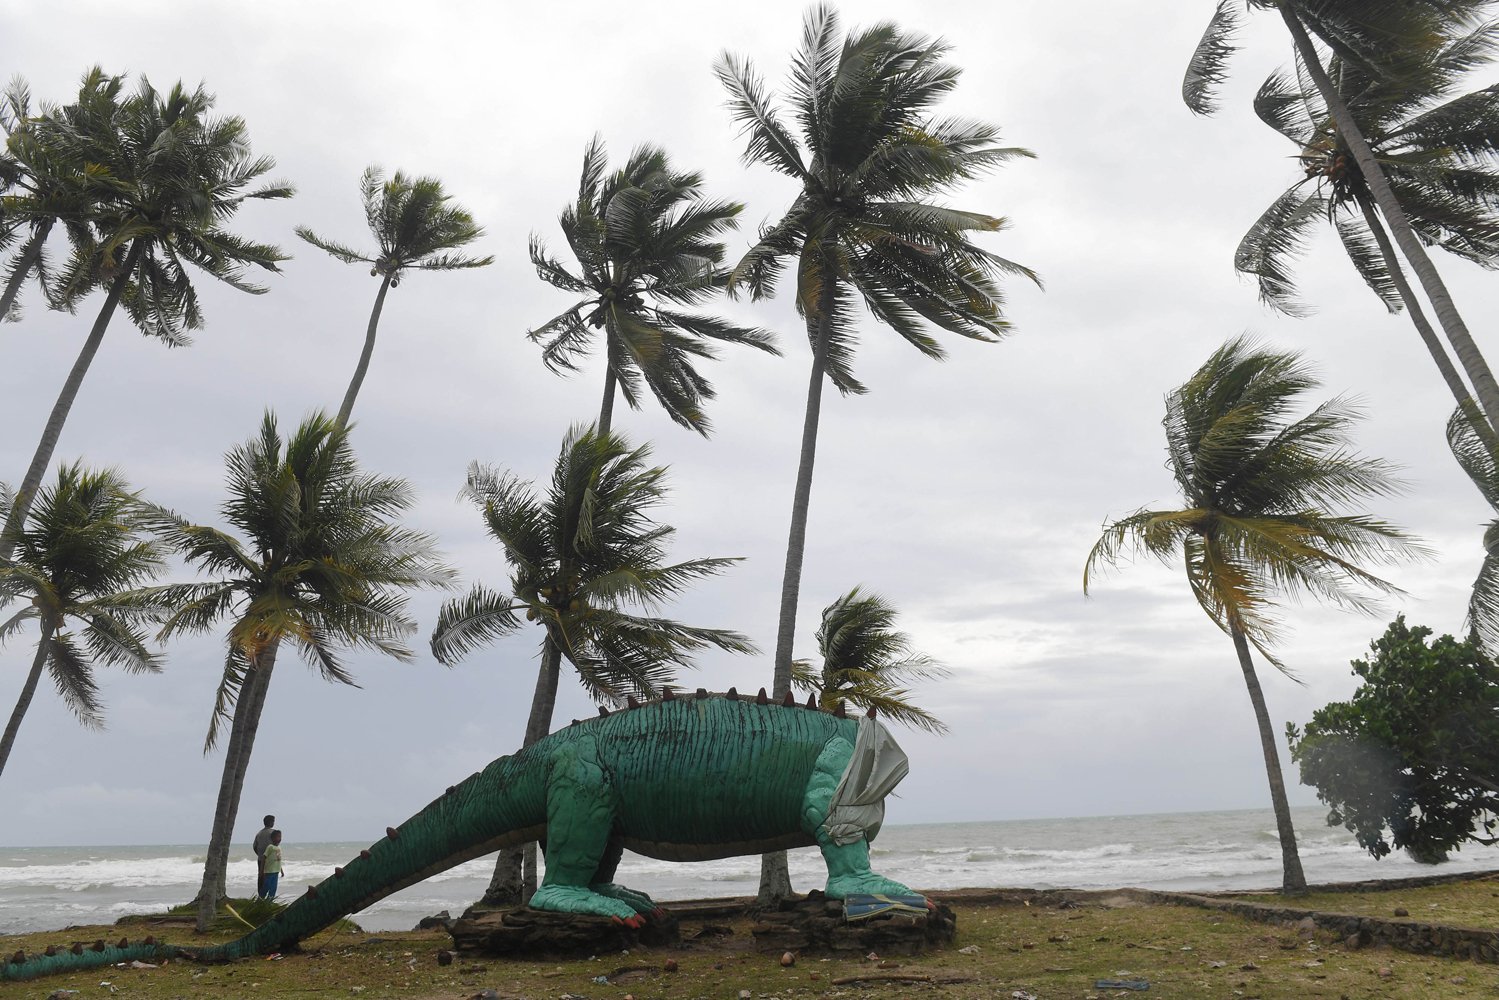 Sebuah patung dinosaurus yang rusak di bibir pantai yang terdampak tsunami, kawasan Cinangka, Serang, Banten, Selasa (25/12/2018).